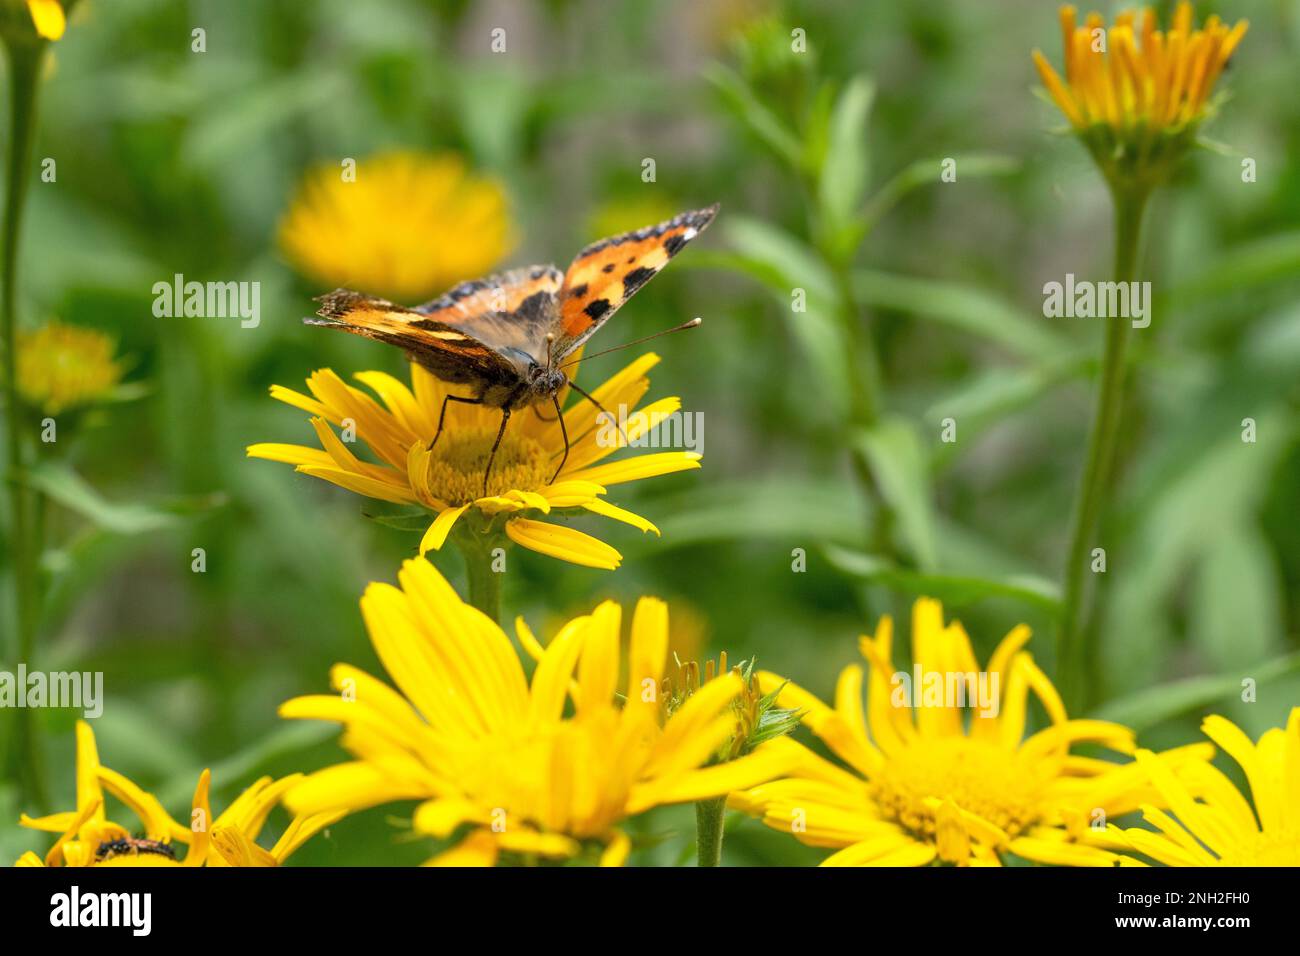 Distefalter, Schmetterling auf Blüte Stock Photo